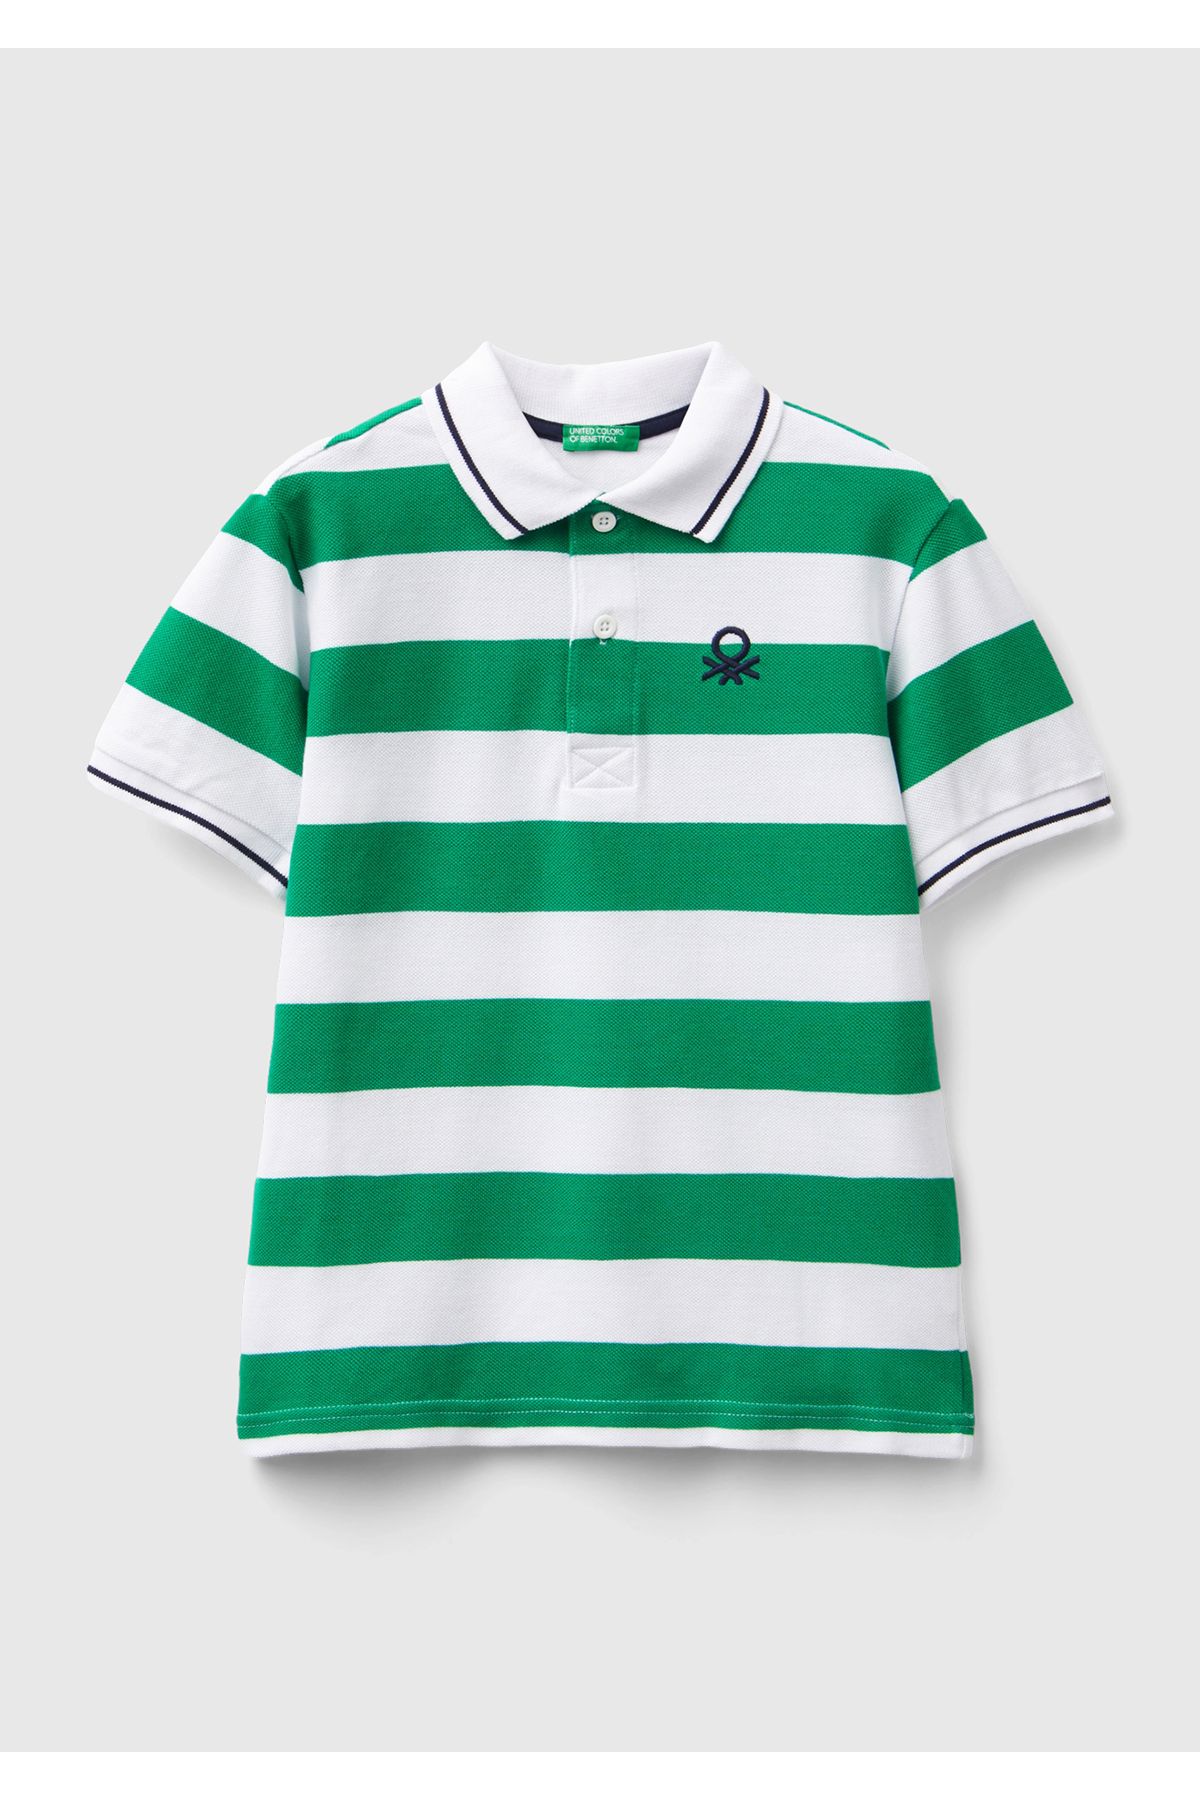 United Colors of Benetton Erkek Çocuk Yeşil-Beyaz Logo İşlemeli Çizgili Pike Polo T-Shirt